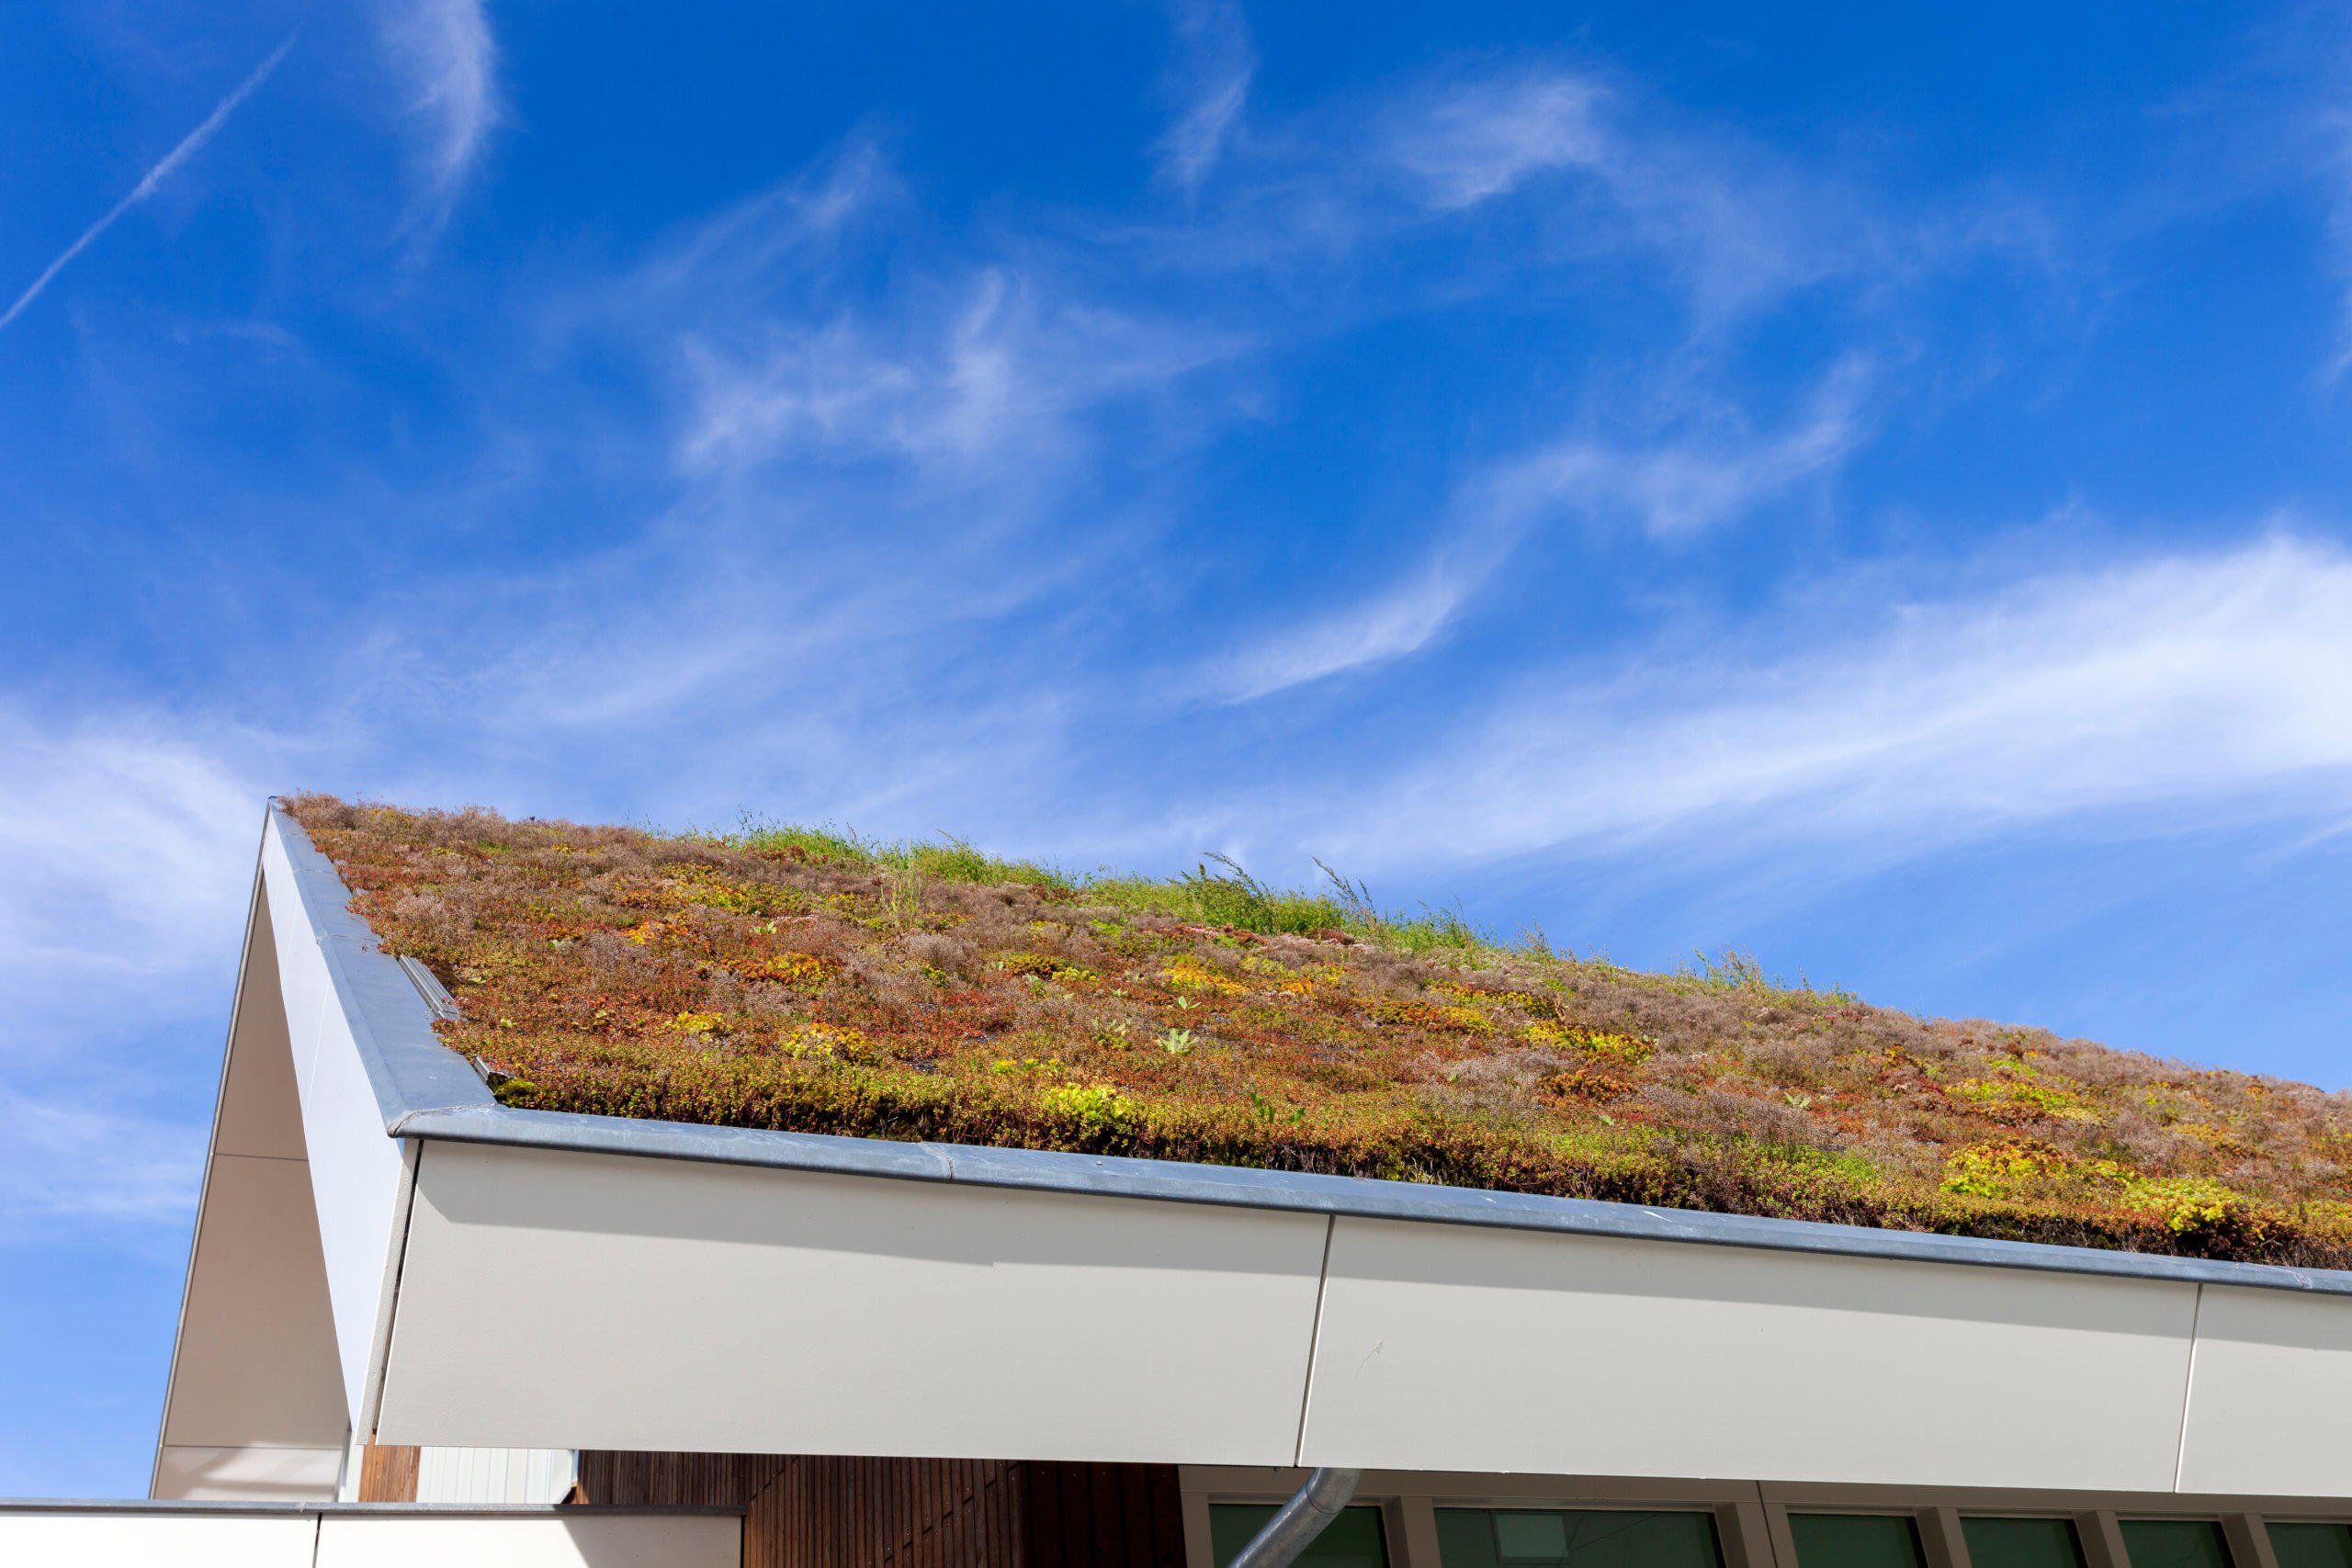 Dakisolatie gecombineerd met een groen dak vol mos